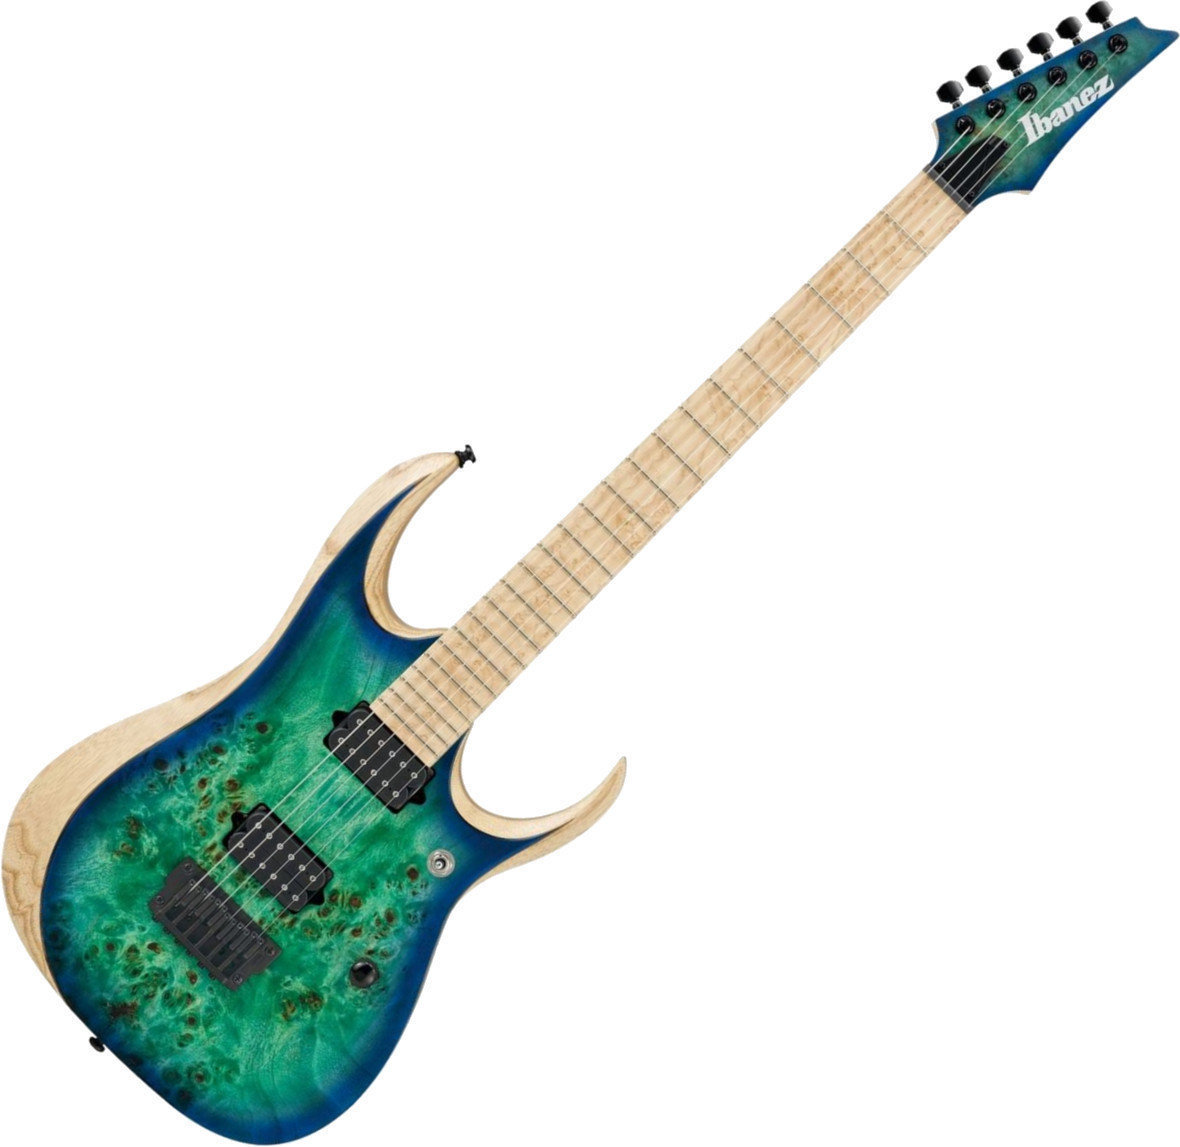 Ηλεκτρική Κιθάρα Ibanez RGDIX6MPB Surreal Blue Burst